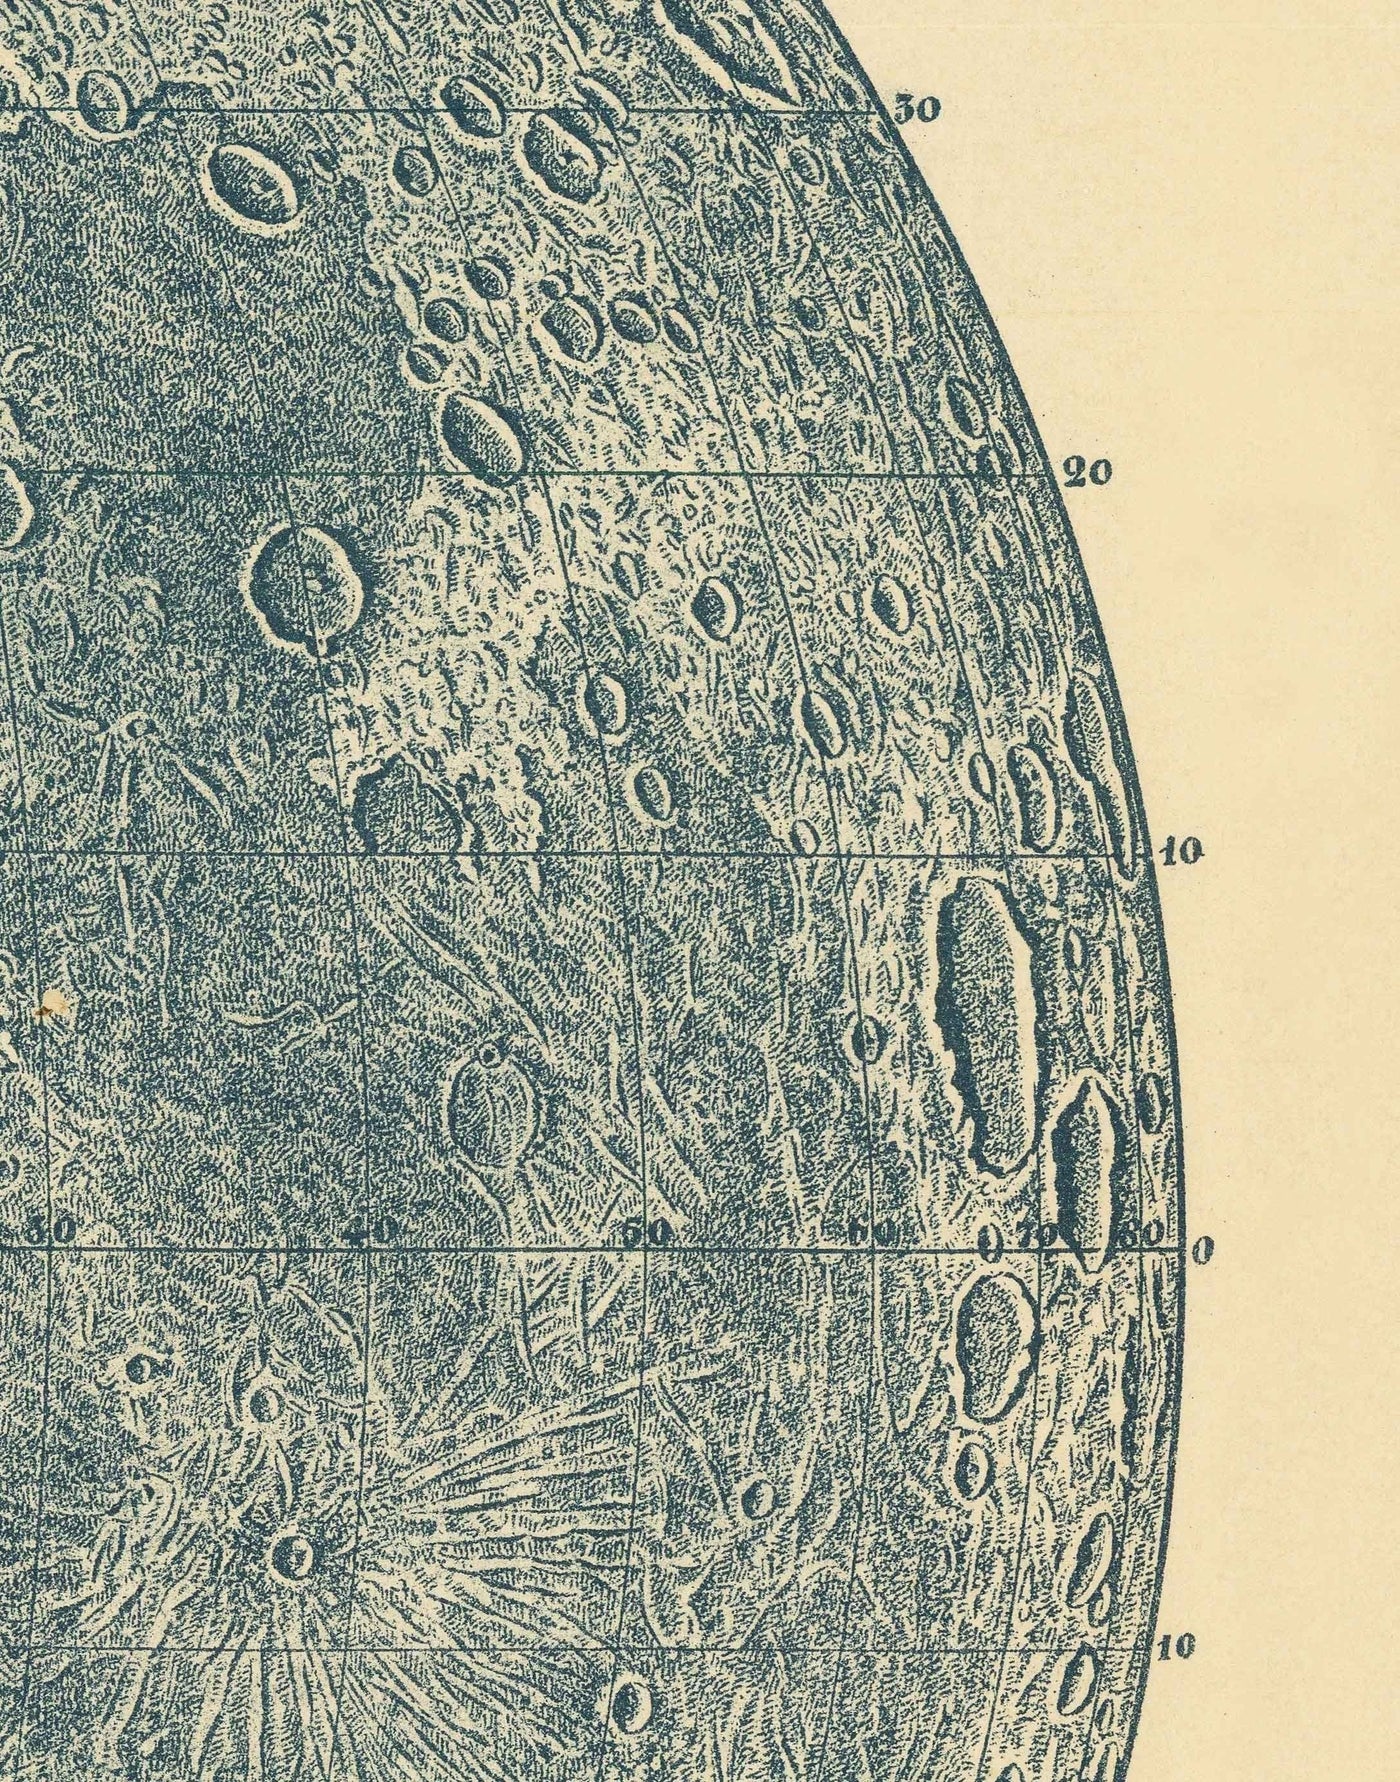 Ilustración de la Luna Vieja, 1888 por Leon Fenet - Litografía francesa de la carta lunar